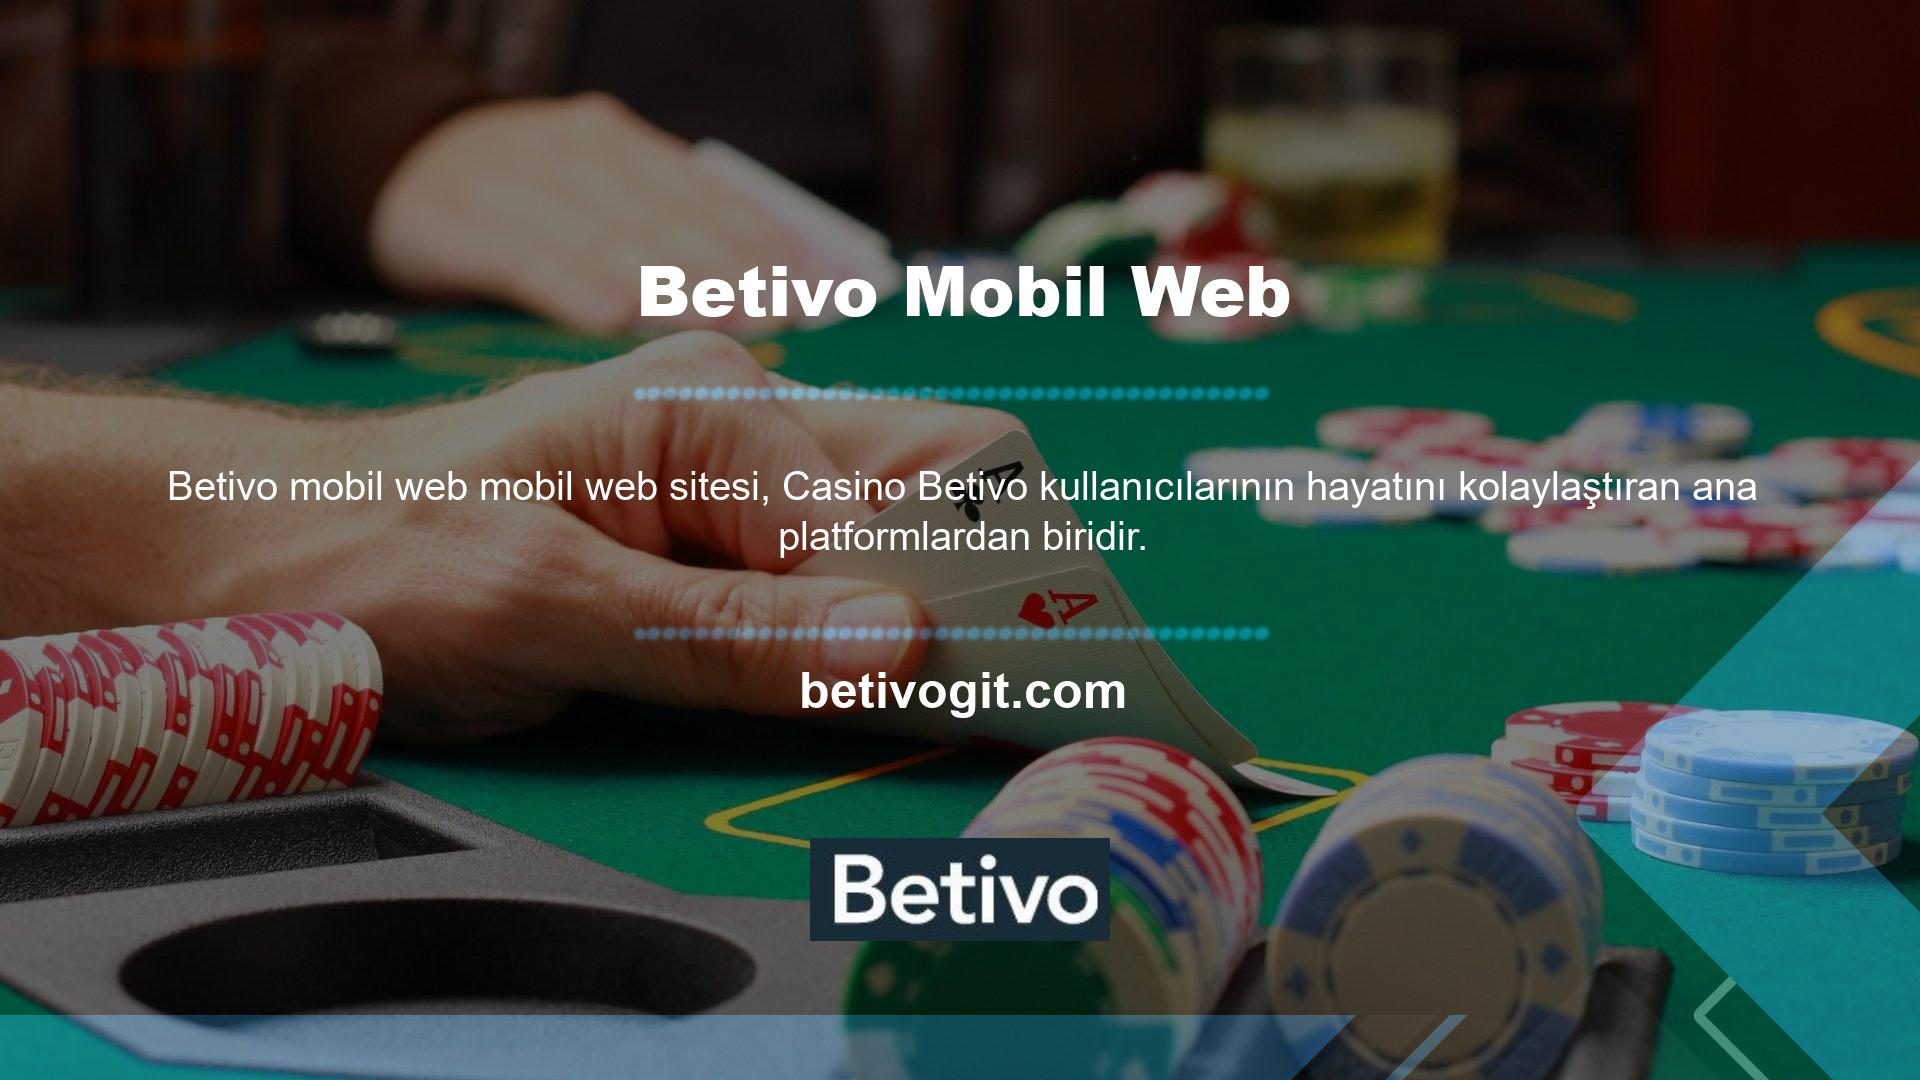 Betivo Android için bir uygulama geliştirdi